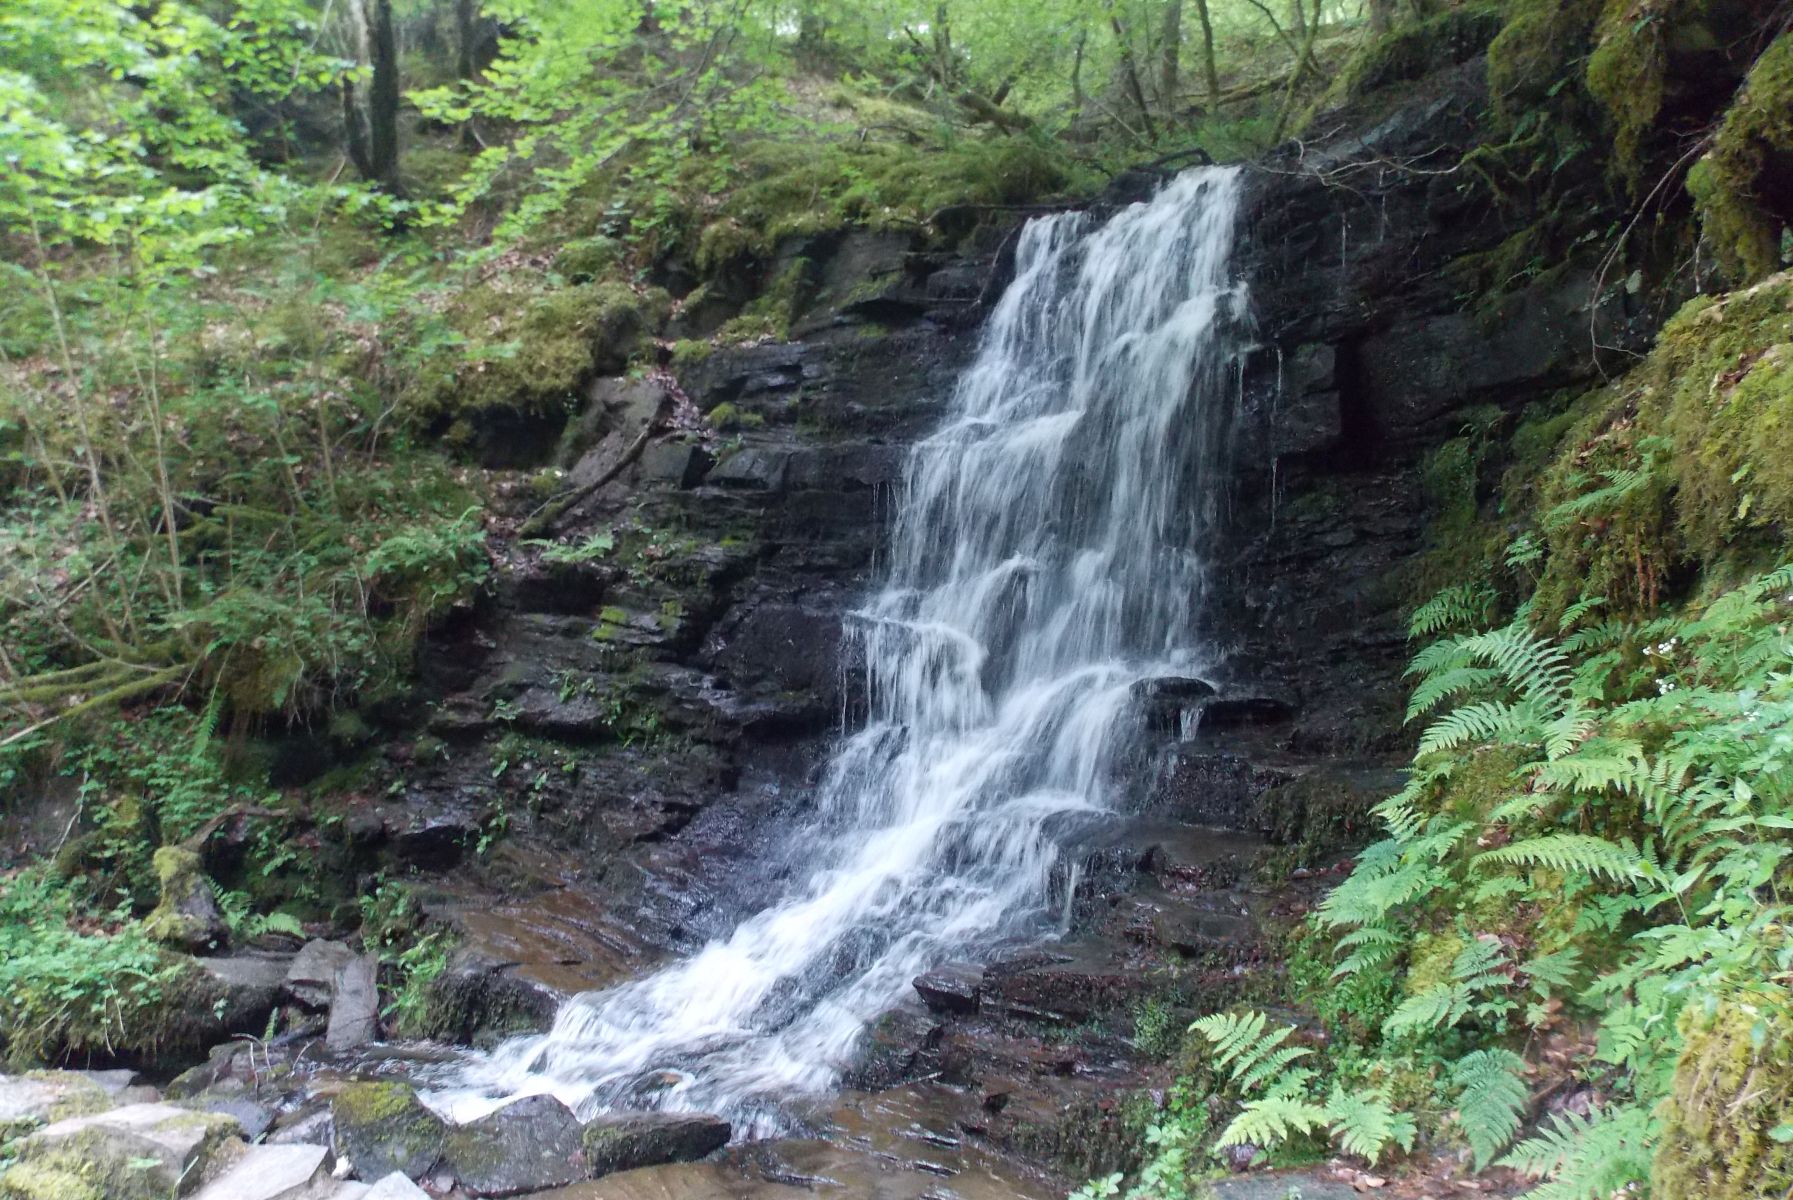 Waterfall in the Birks of Aberfeldy